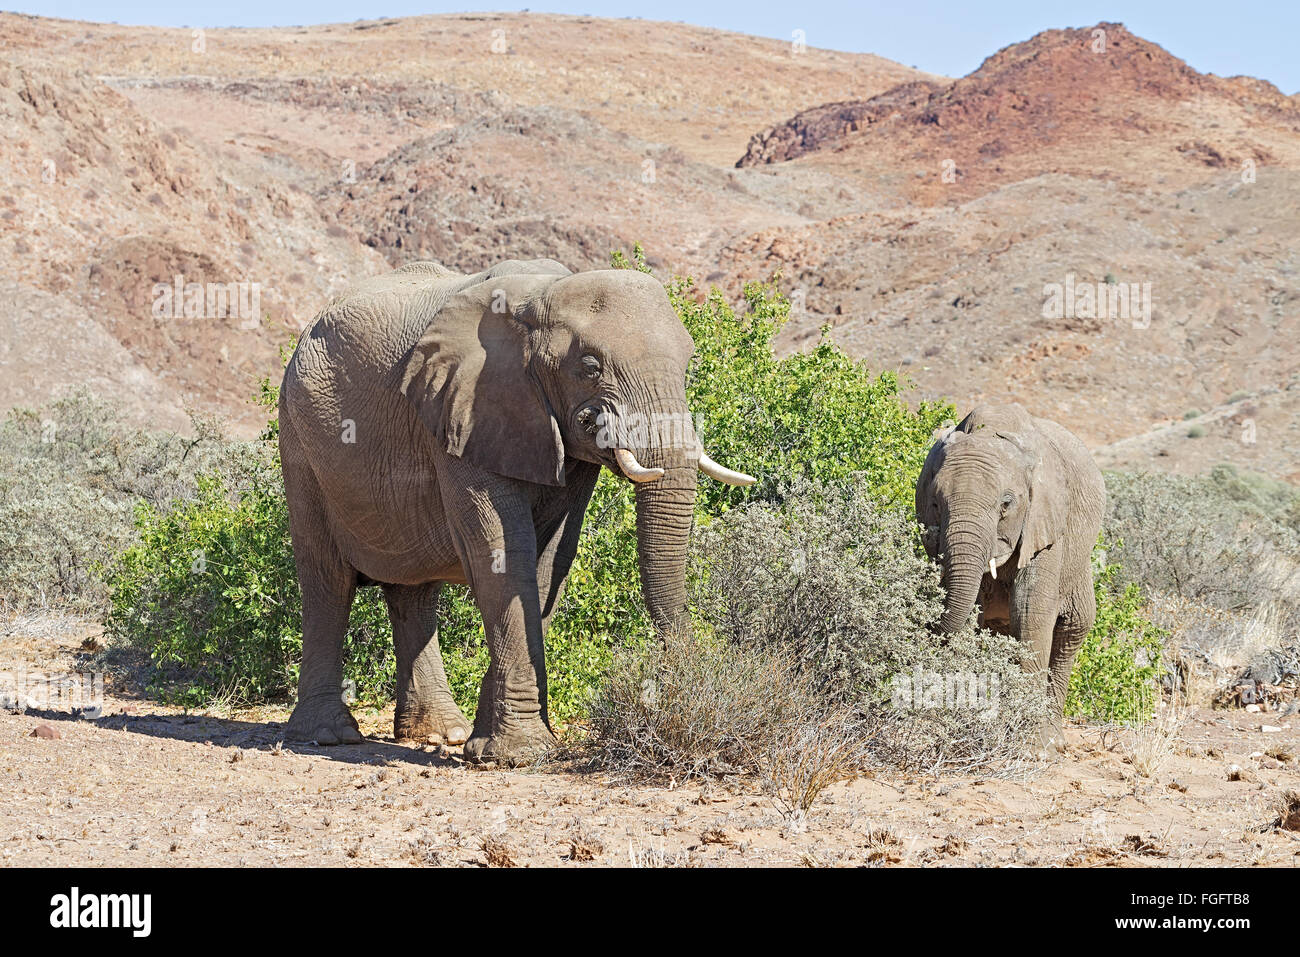 Le Damaraland éléphants adaptés au désert, se nourrissant de feuilles des arbustes Banque D'Images